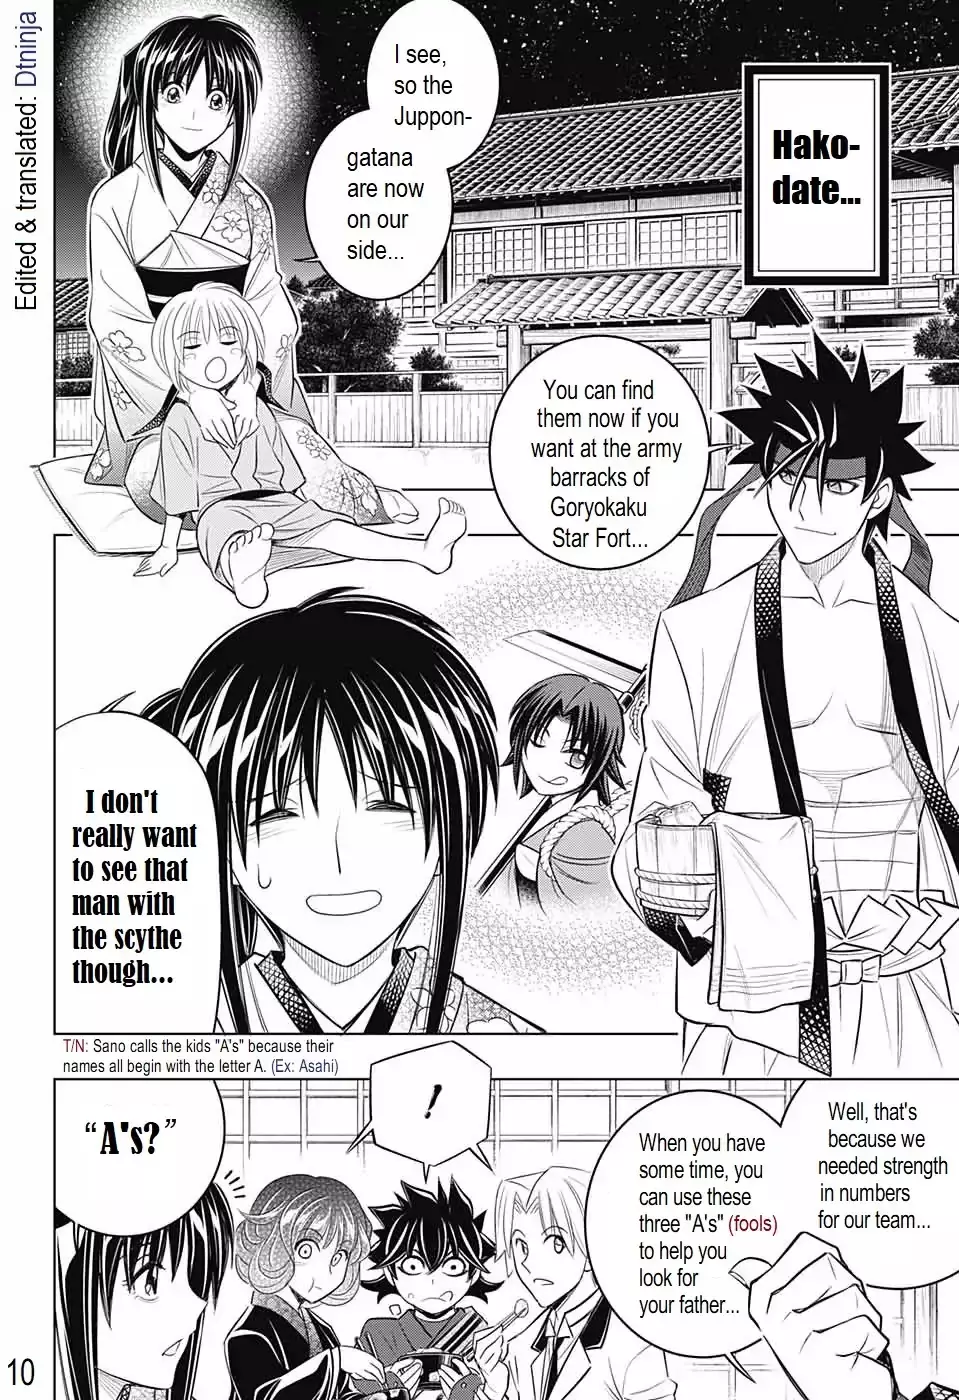 Rurouni Kenshin: Hokkaido Arc - 15 page 9